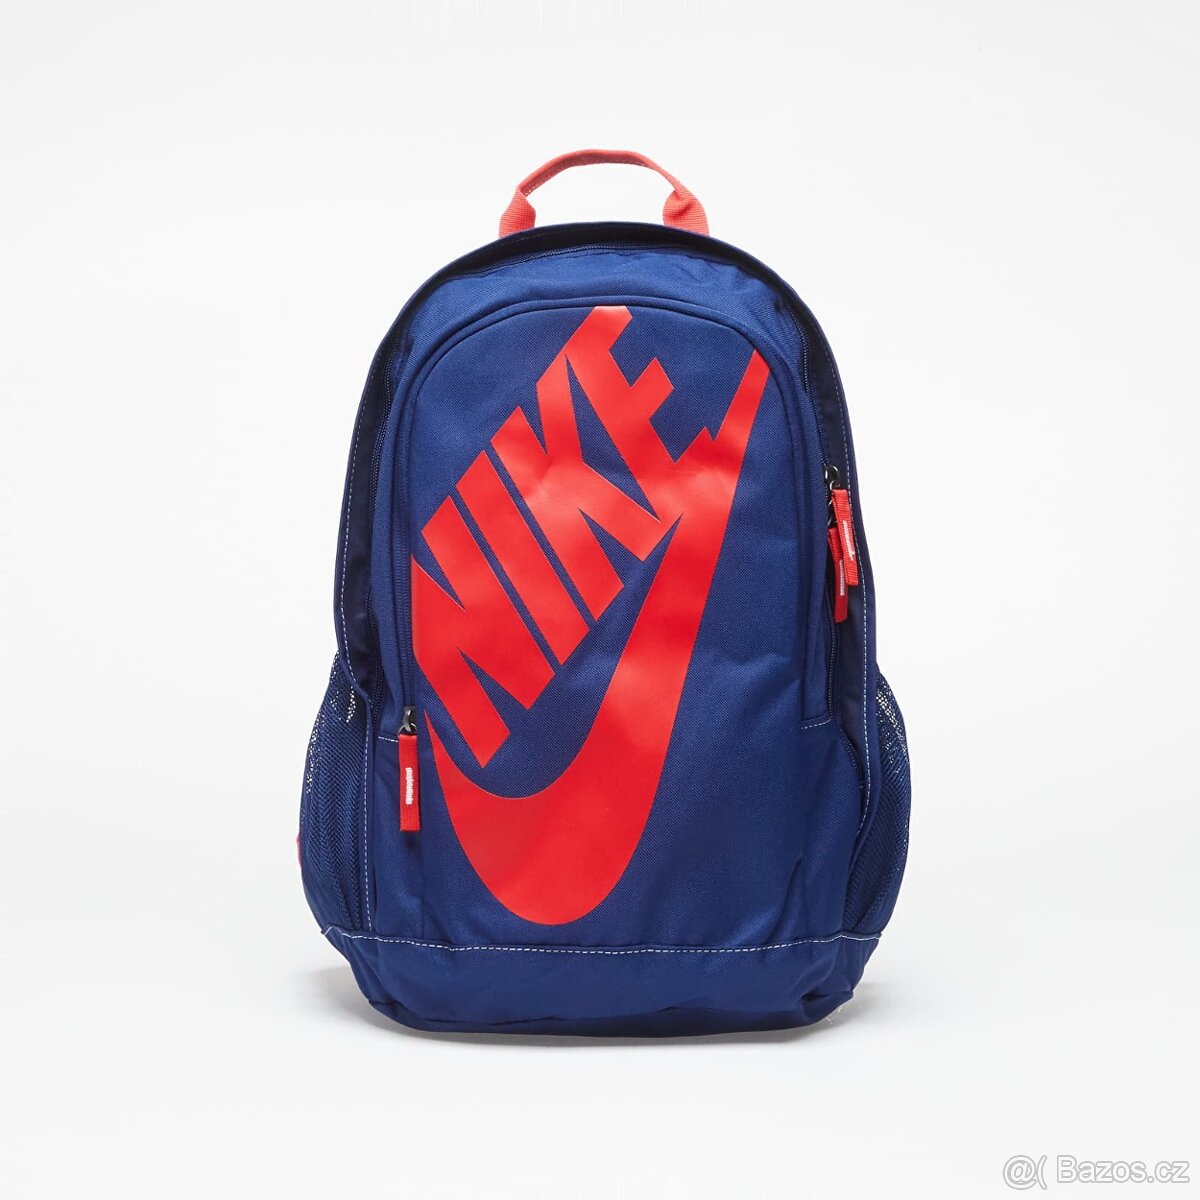 Batoh Nike Hayward Futura 2.0 Modro červený - NOVÝ